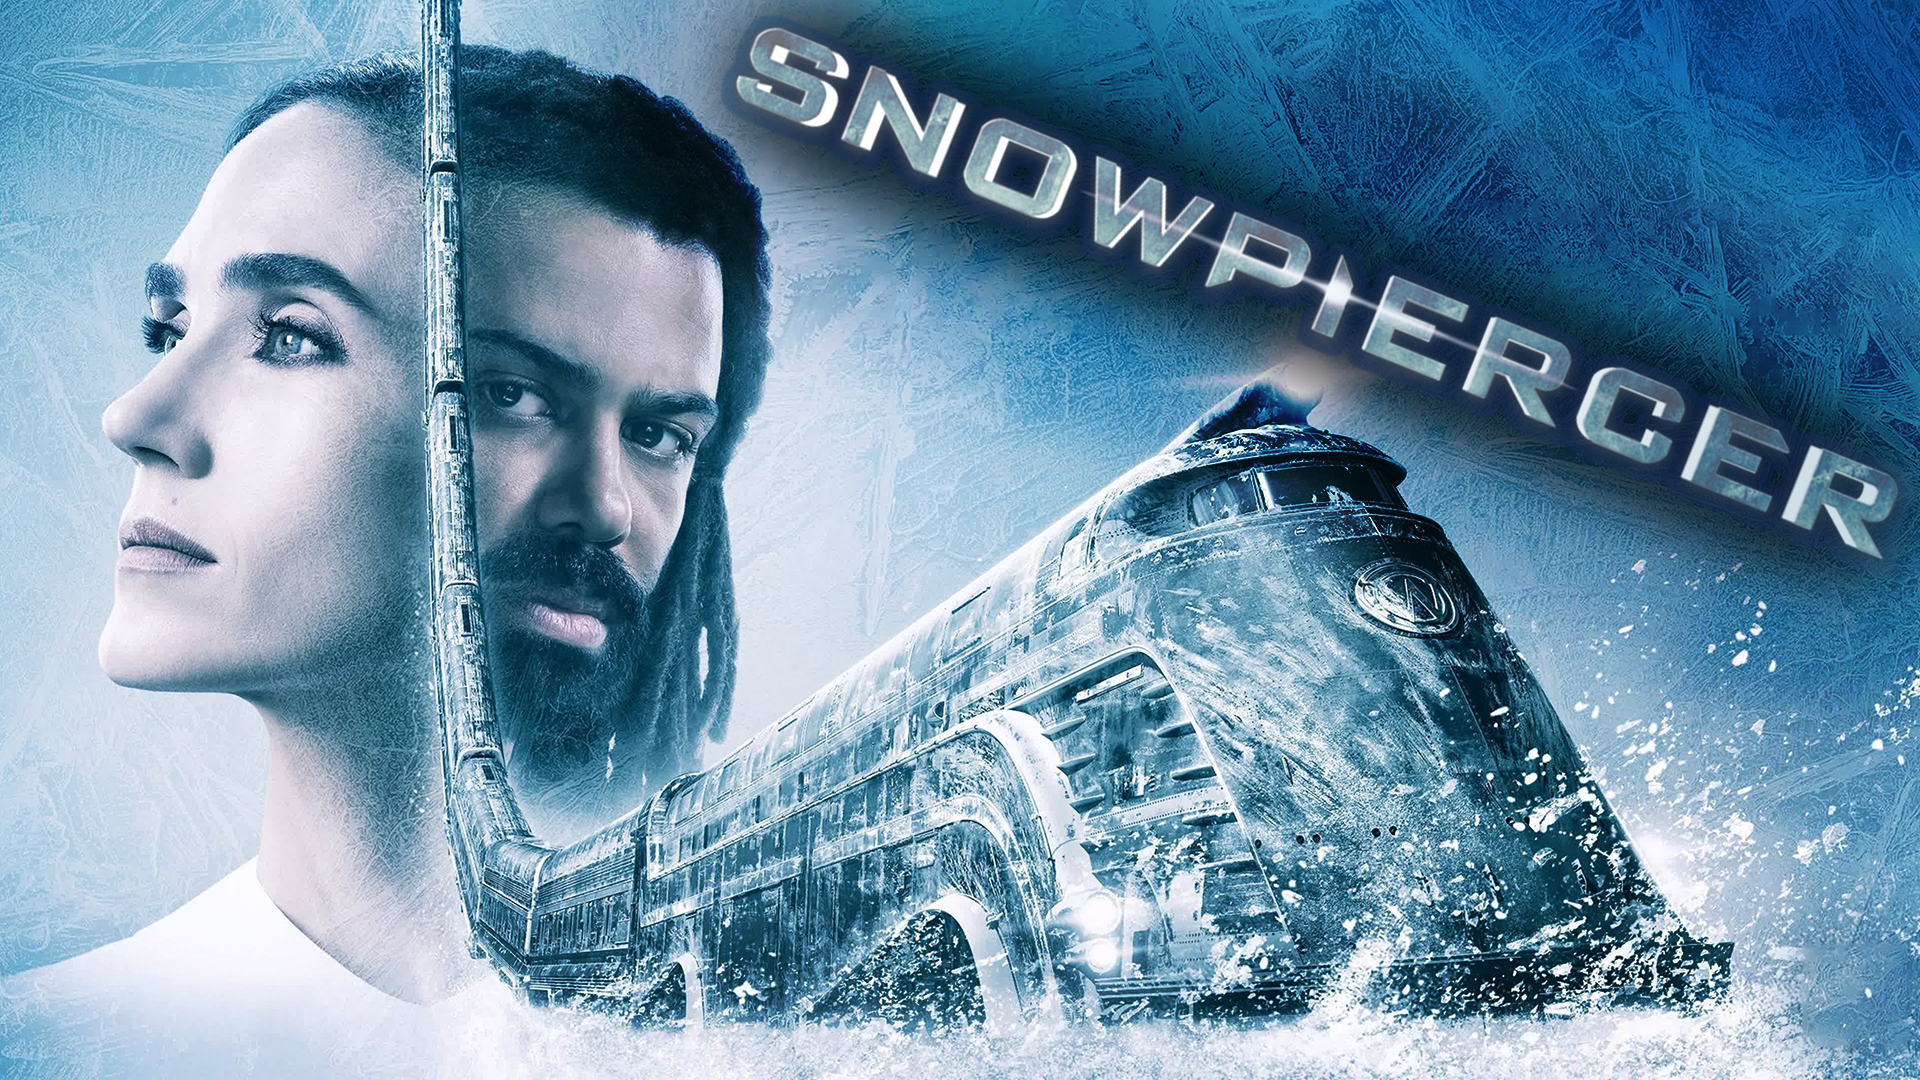 Сквозь снег – 1 сезон 4 серия / Snowpiercer